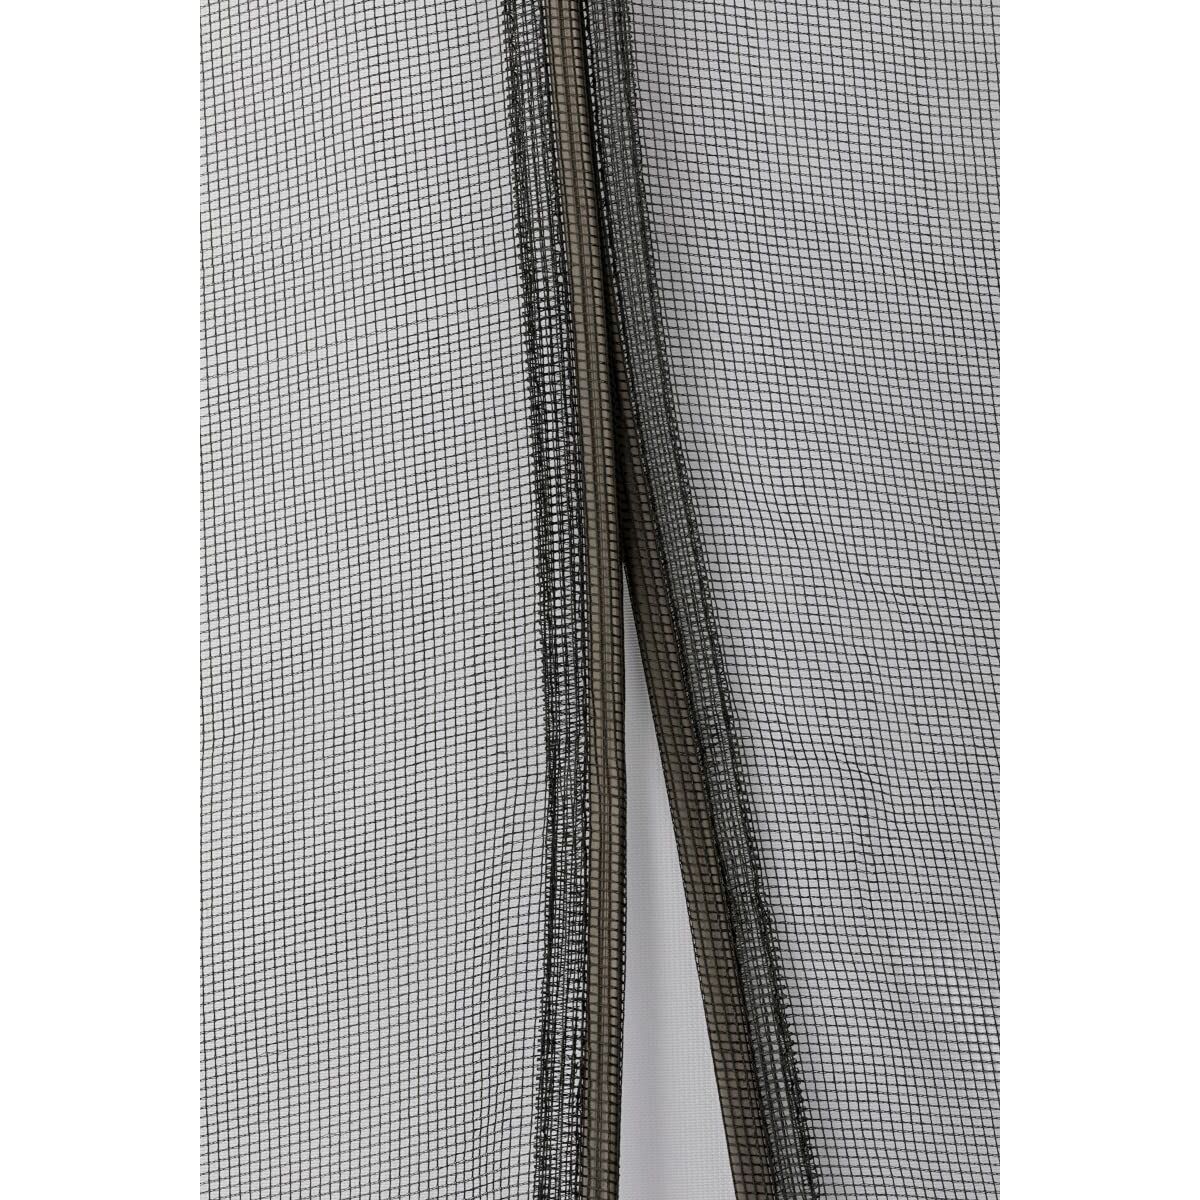 Tenda Zanzariera Schellenberg Porte Magnetico 90 x 210 cm Antracite Fibra di Vetro